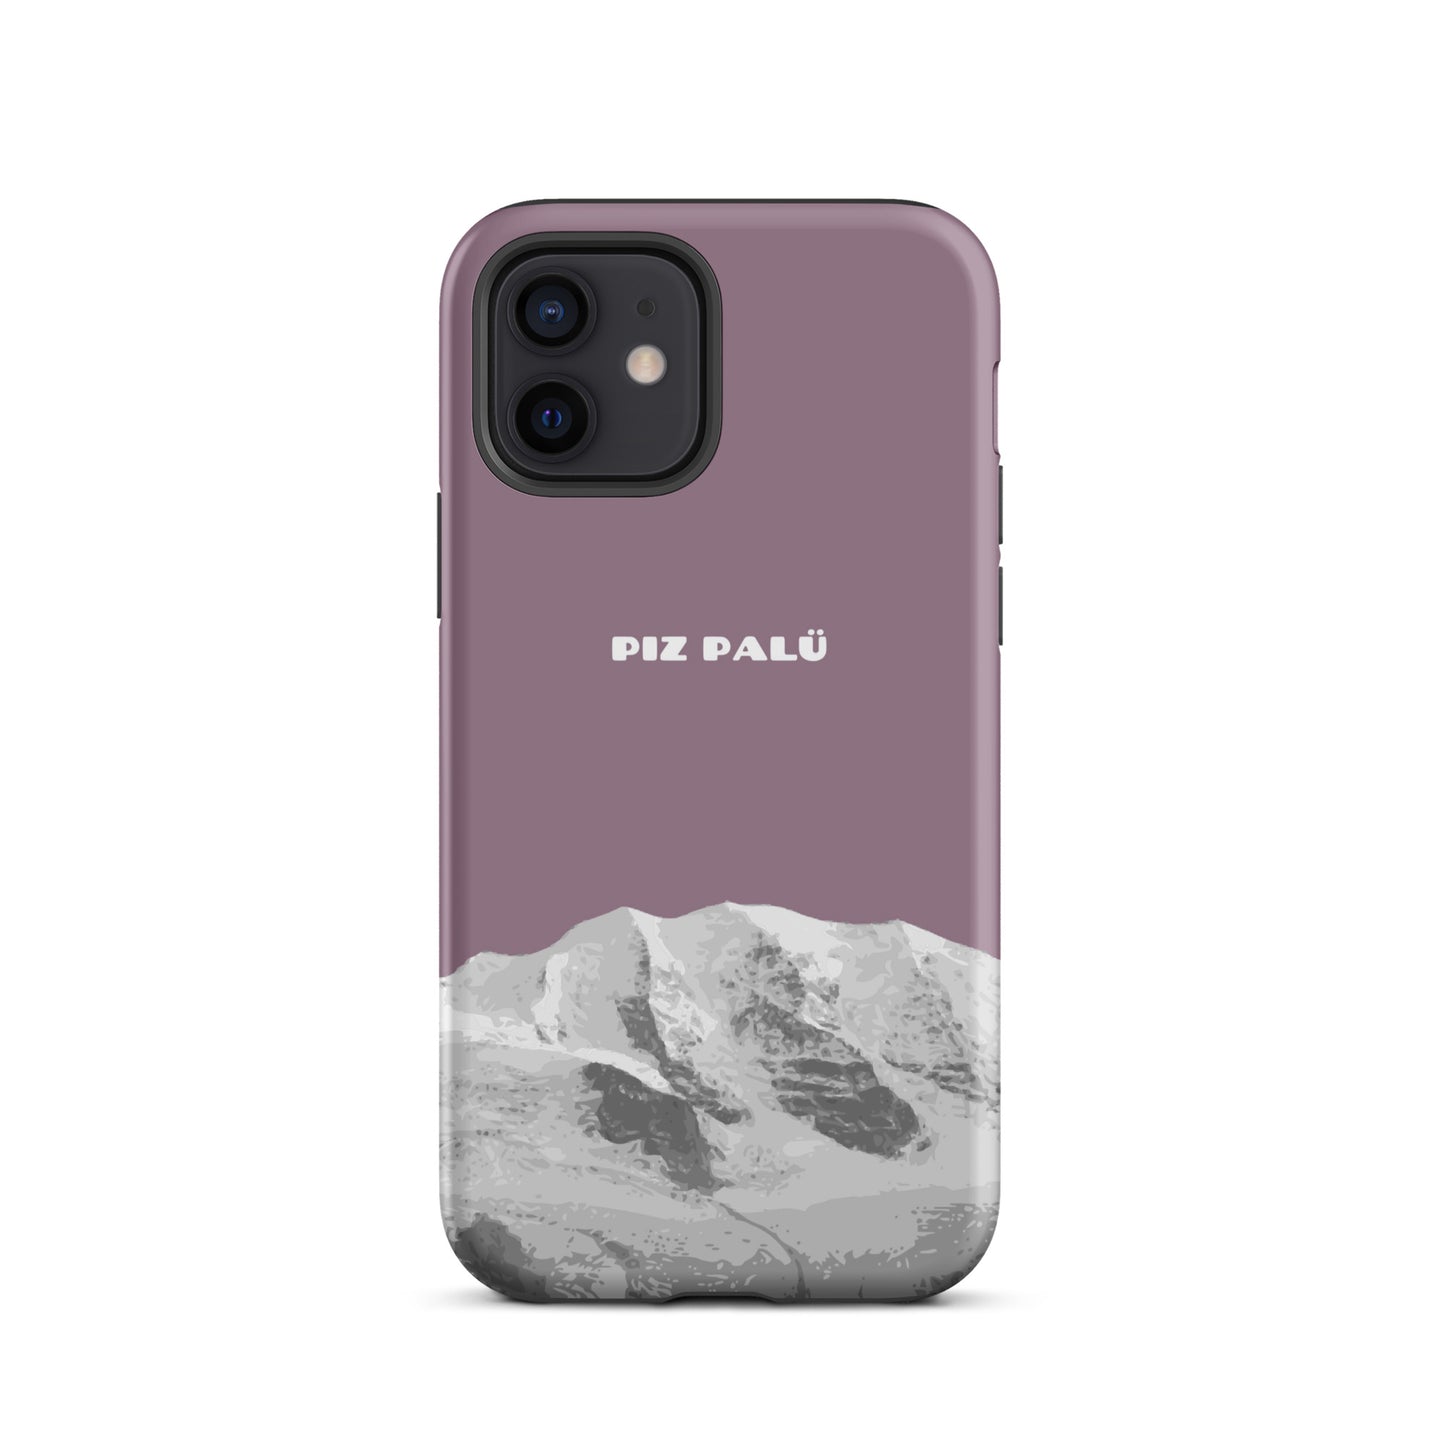 Hülle für das iPhone 12 von Apple in der Farbe Pastellviolett, dass den Piz Palü in Graubünden zeigt.